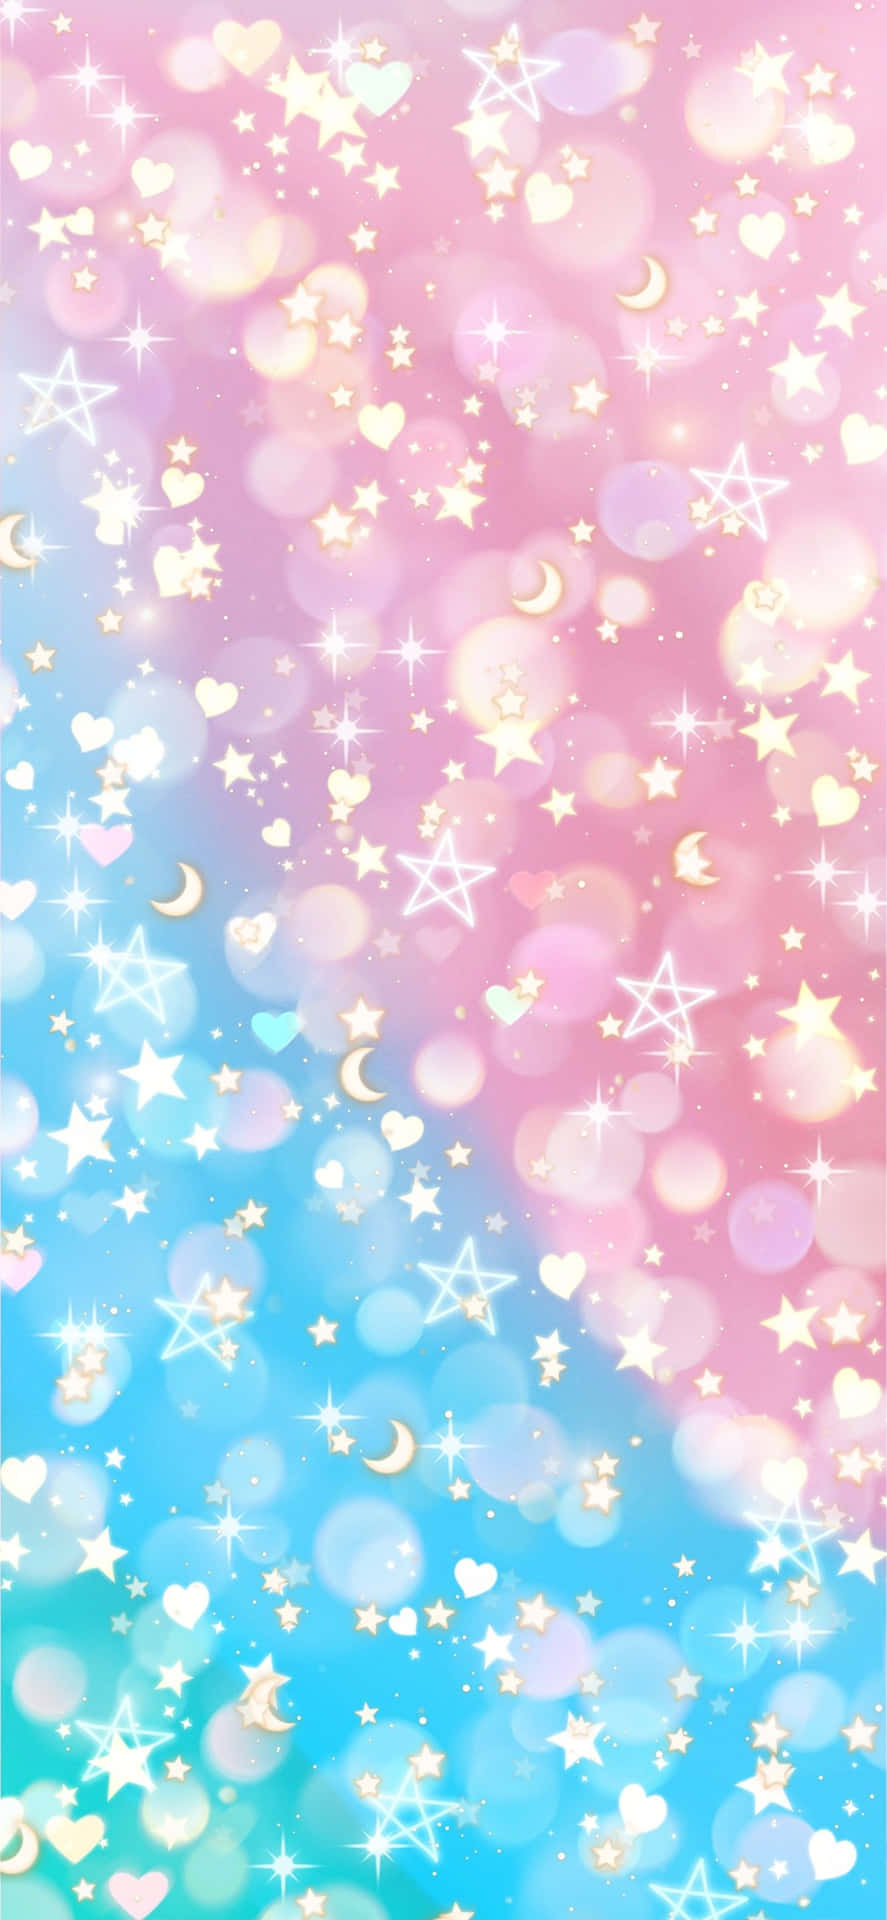 Artedigital De Estrellas Lindas En Color Rosa Y Azul Fondo de pantalla